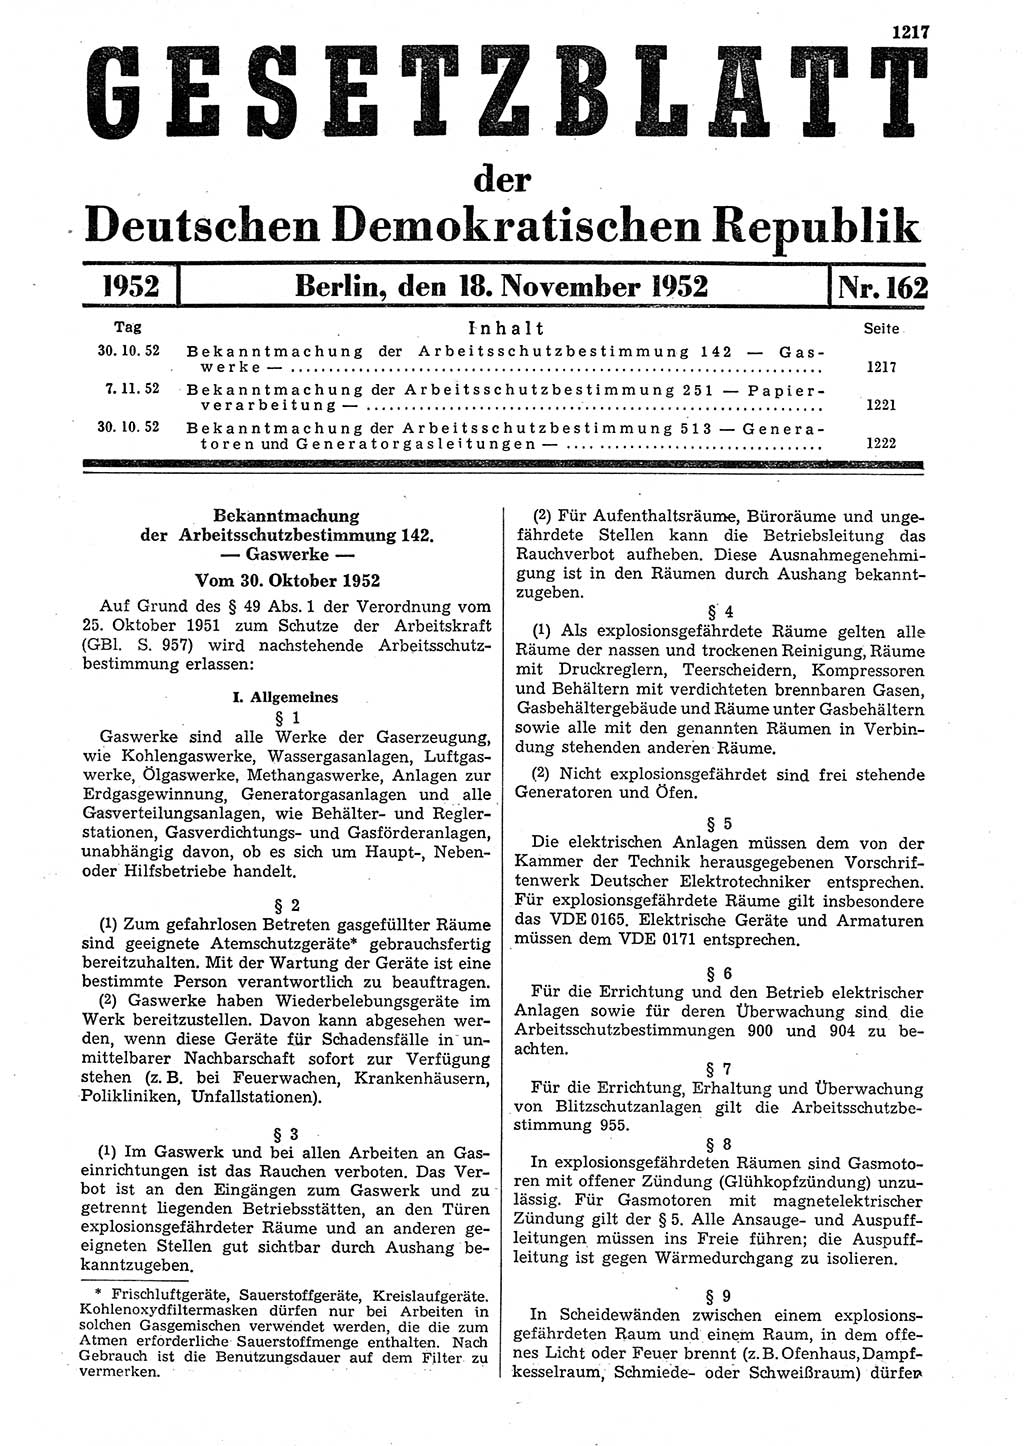 Gesetzblatt (GBl.) der Deutschen Demokratischen Republik (DDR) 1952, Seite 1217 (GBl. DDR 1952, S. 1217)